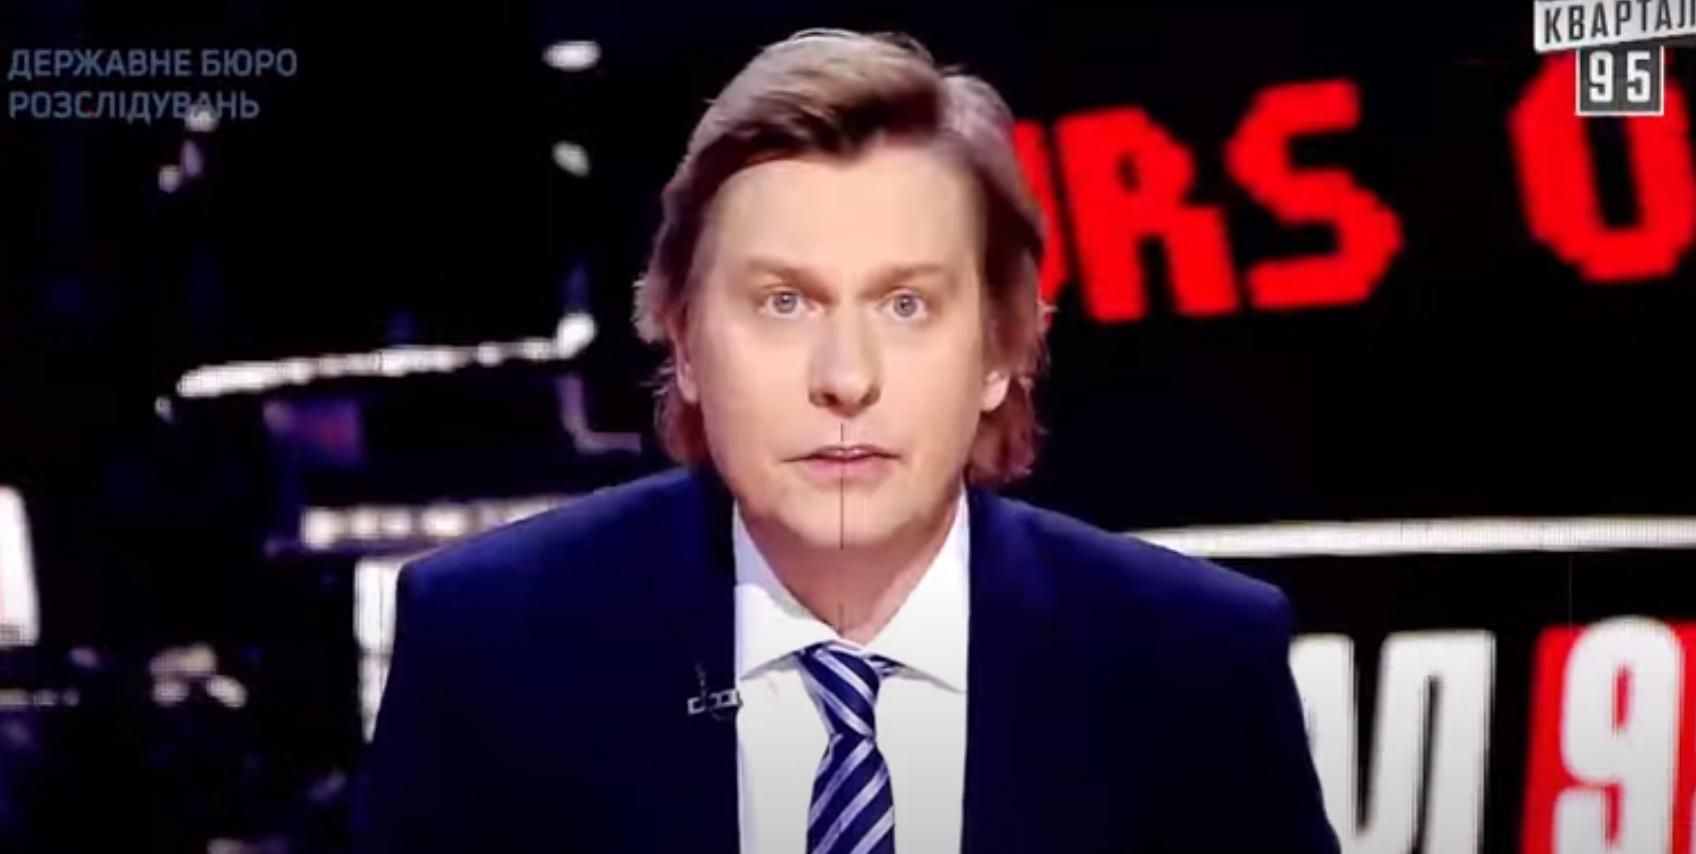 "Прикрываются порохоботами": ГБР опубликовало видео о Порошенко с кадрами из "95 квартала"